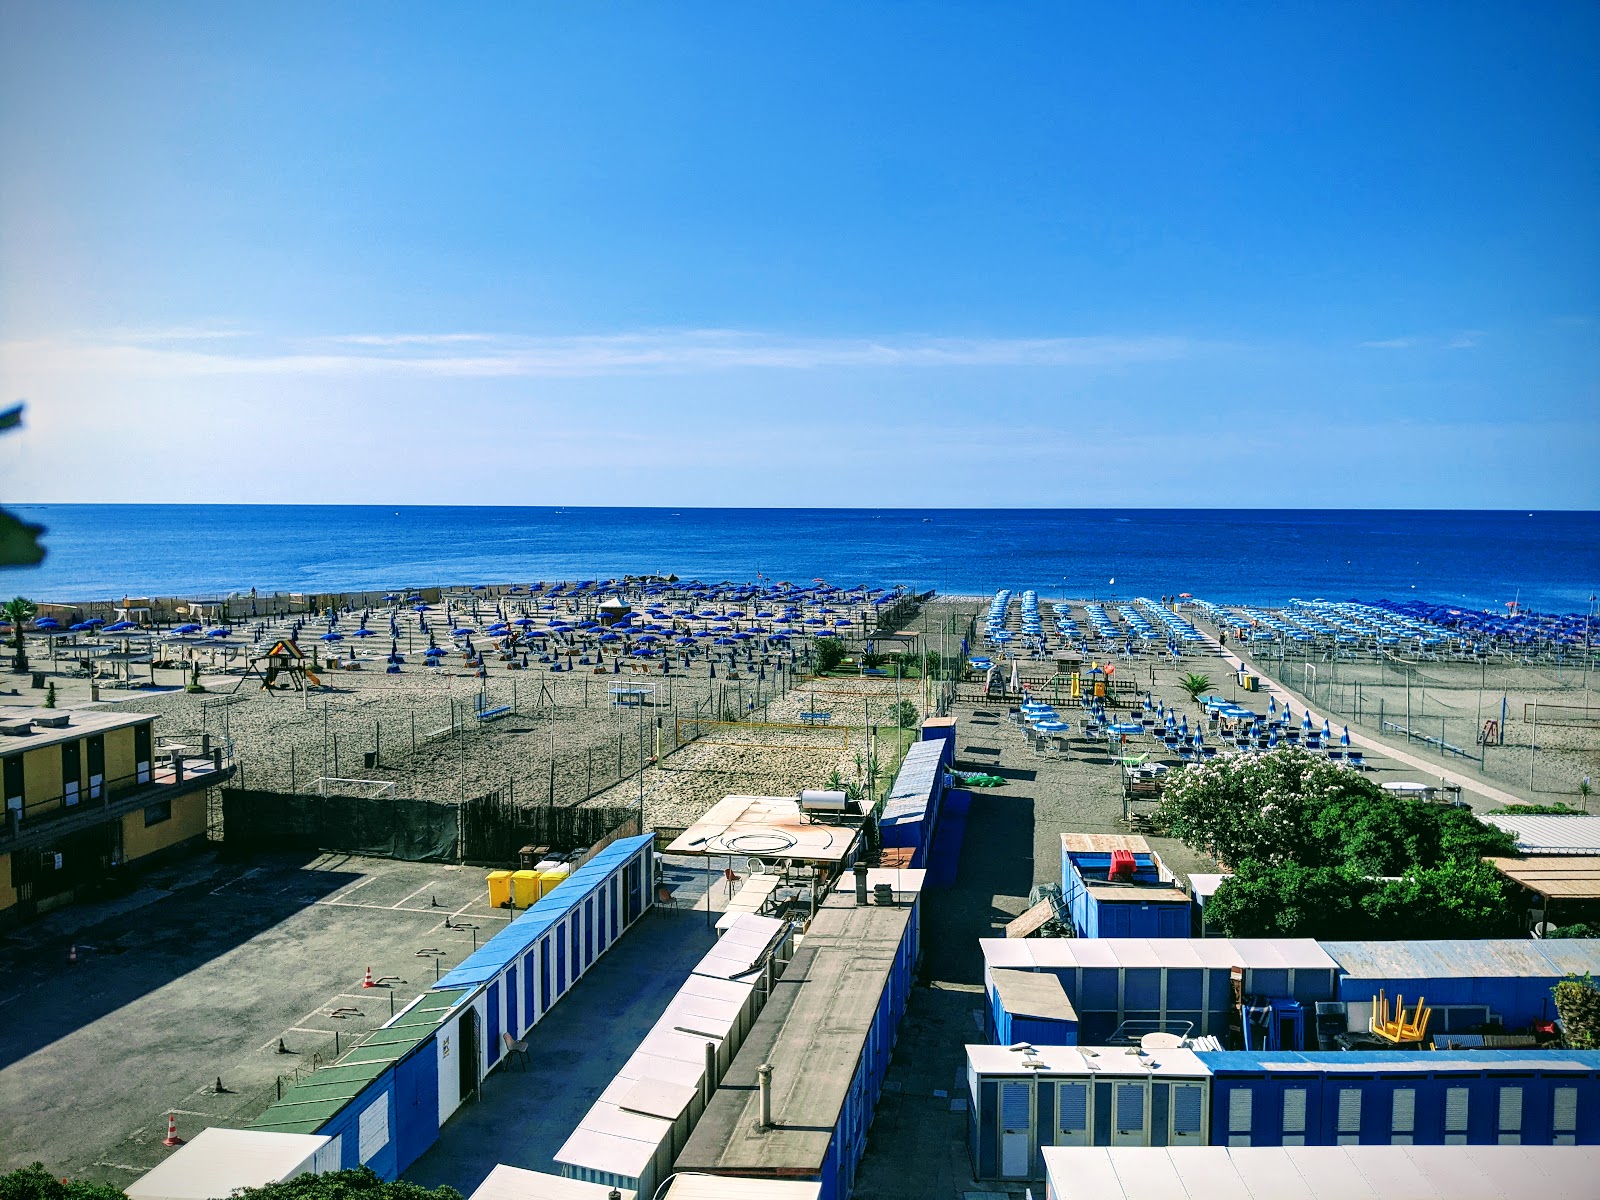 Fotografija Spiaggia Tito Groppo z modra voda površino